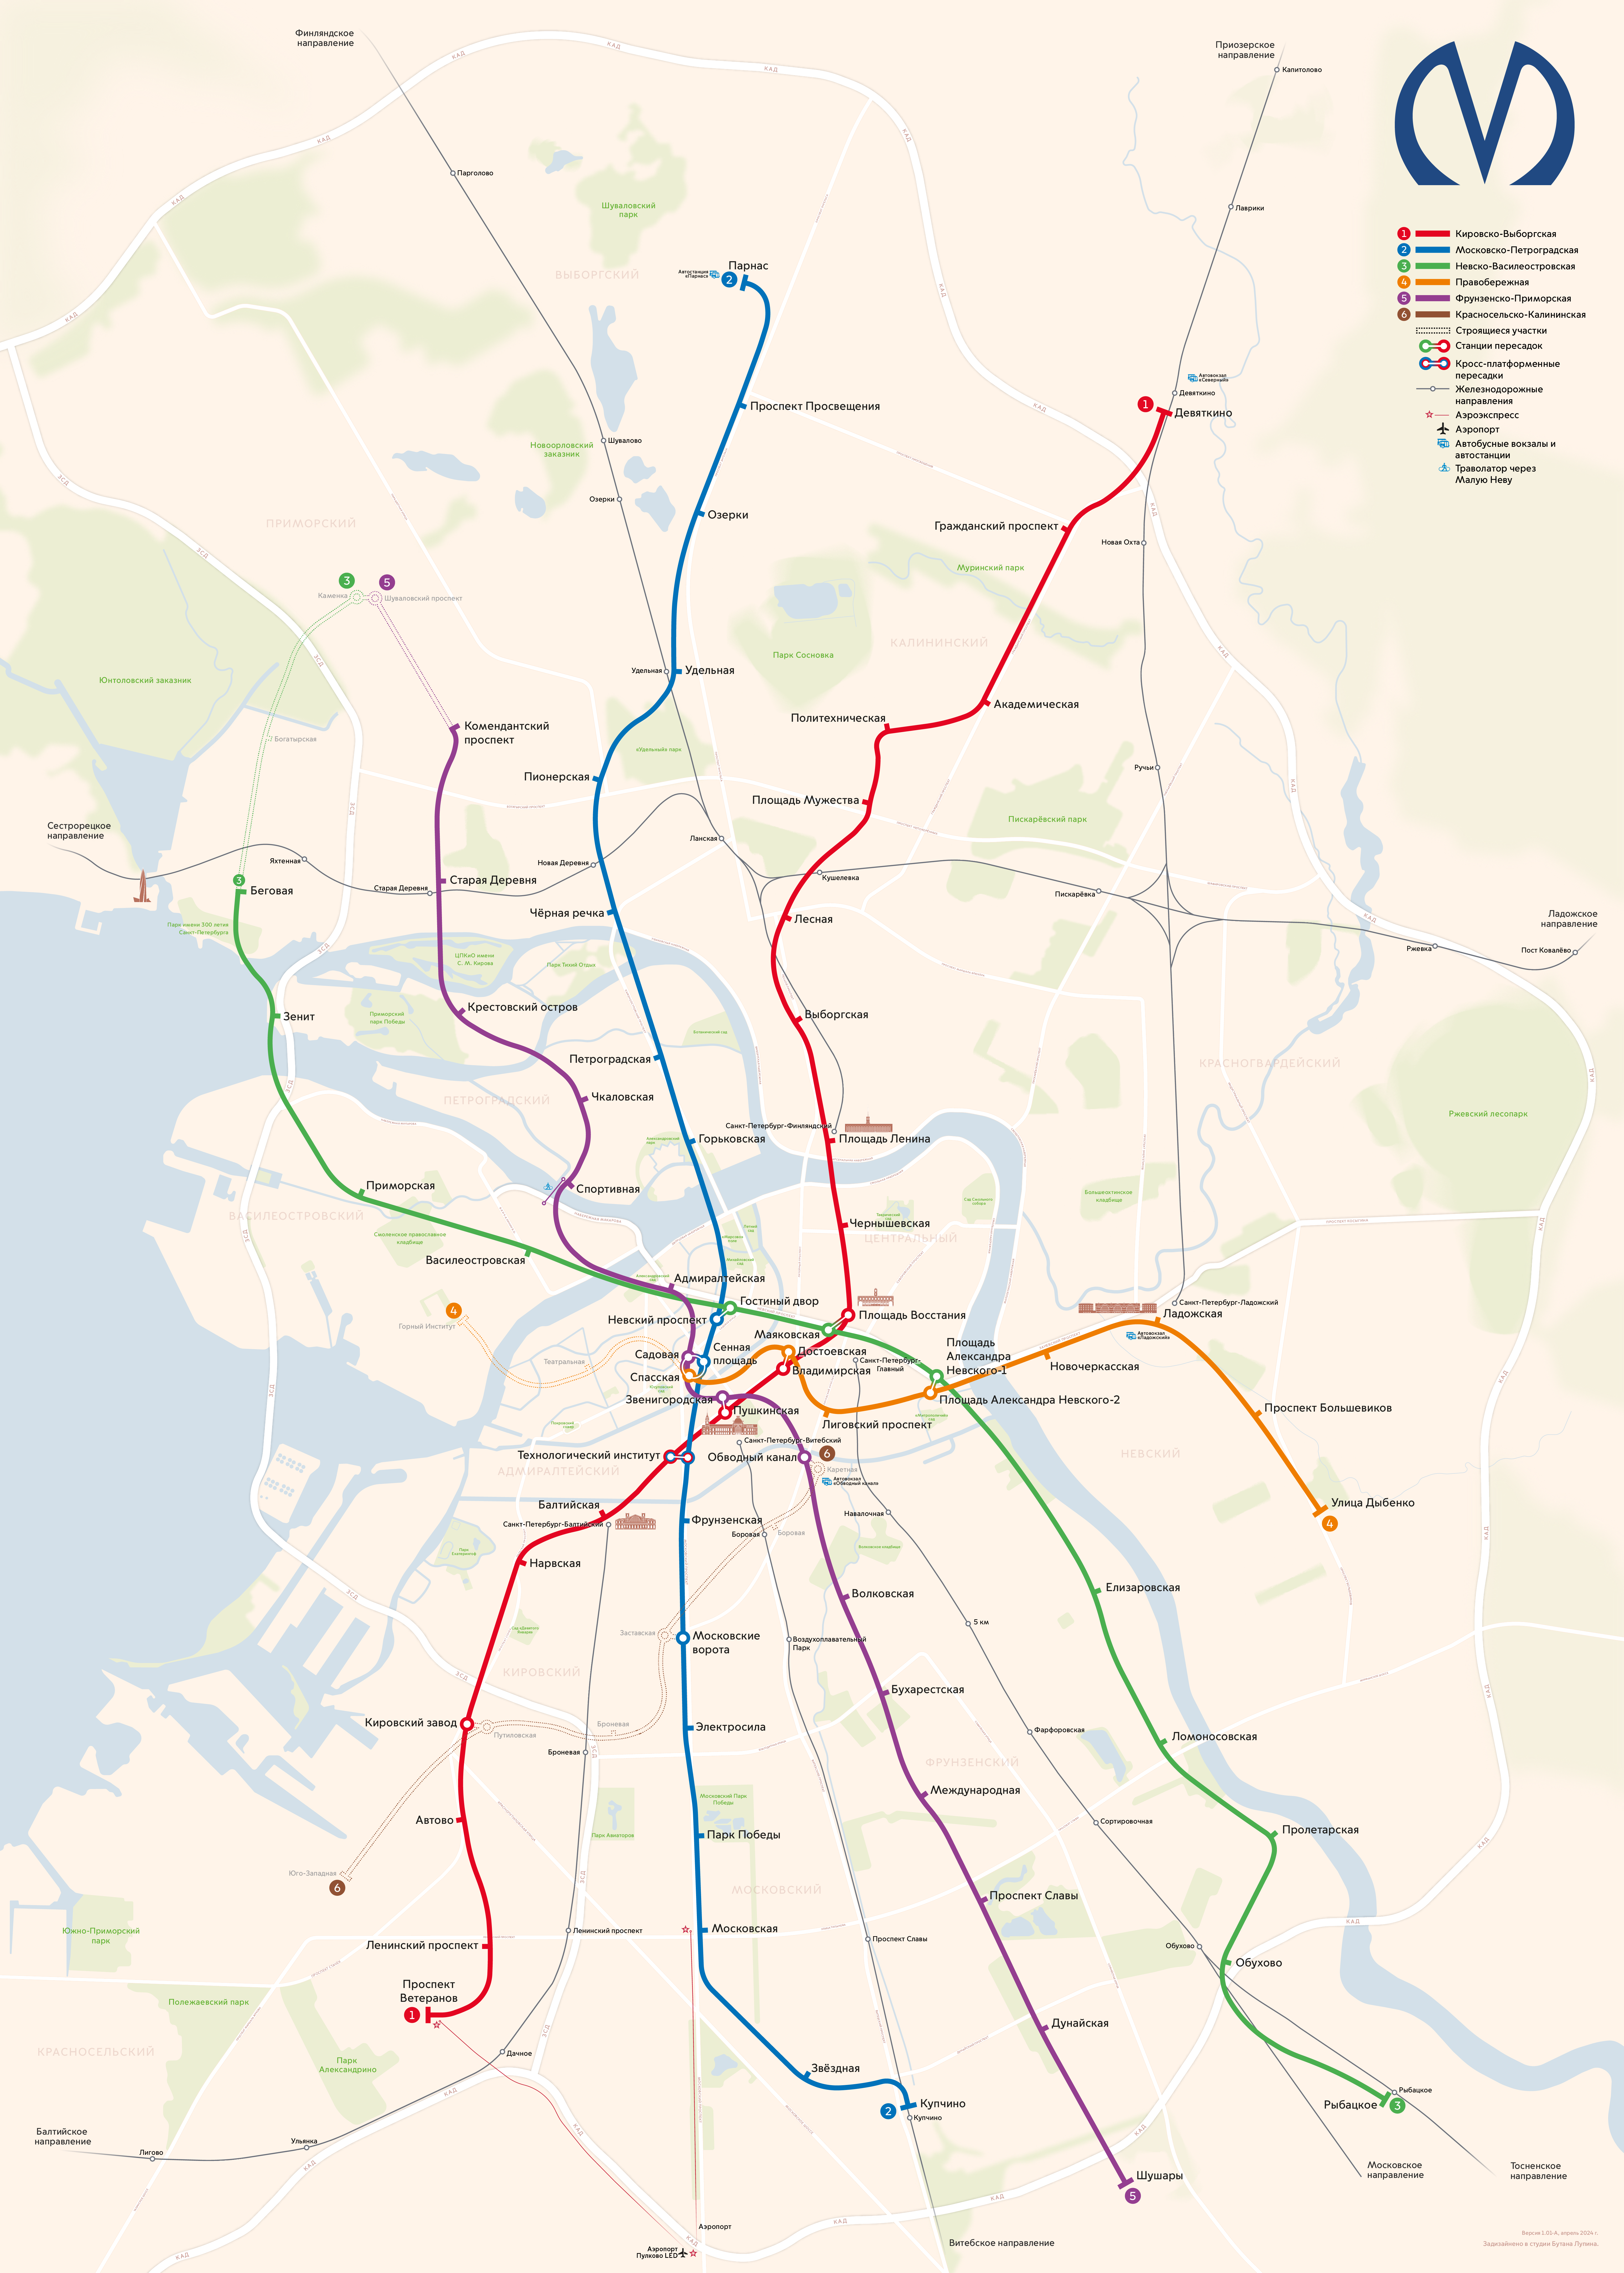 Санкт-Петербург — Метрополитен — Схемы